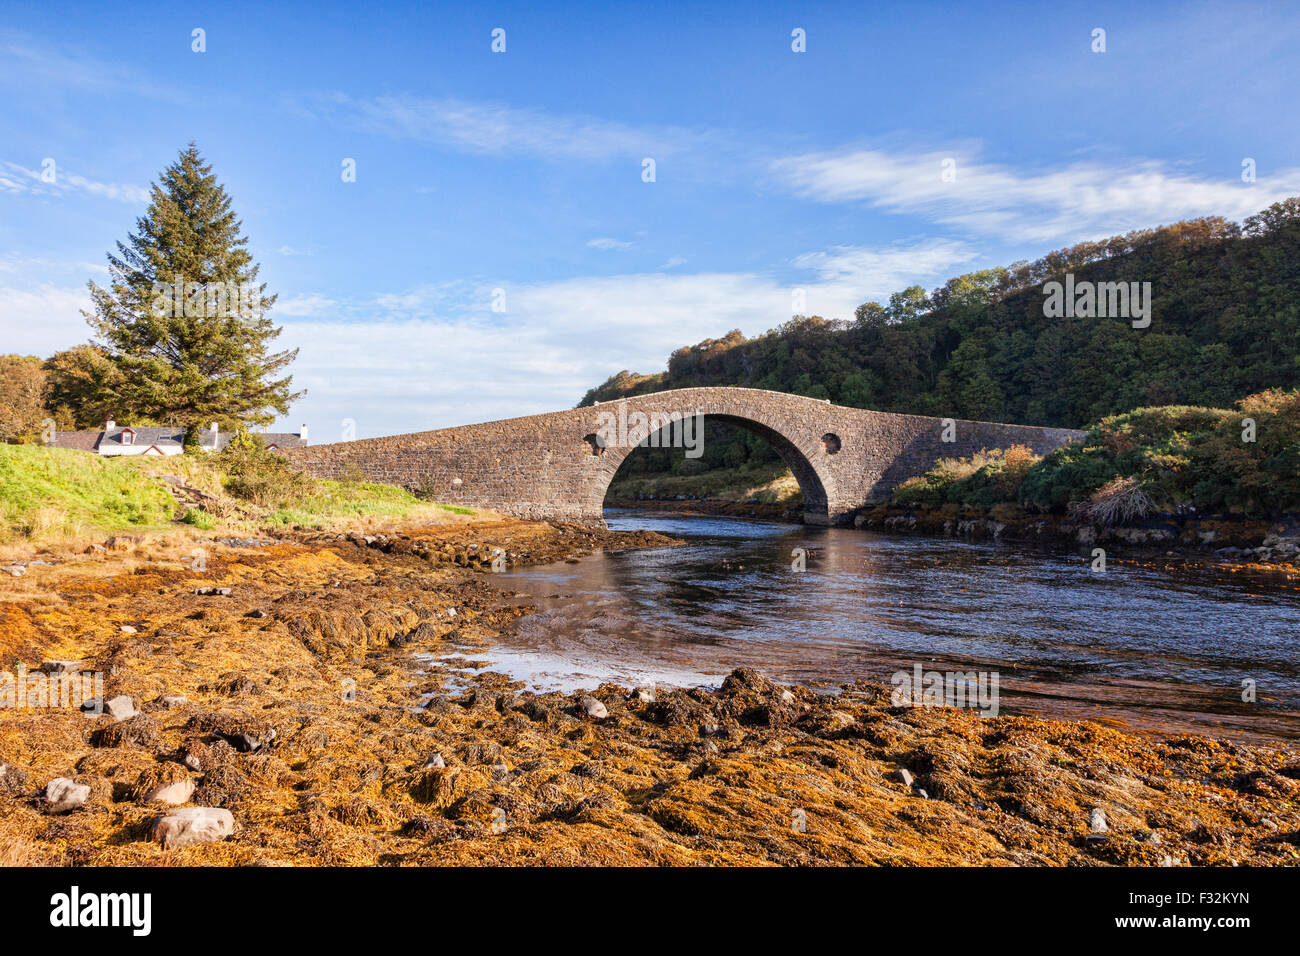 Il Clachan Bridge, noto come il ponte sopra l'Atlantico, che collega la terraferma scozzese con l'isola di Seil... Foto Stock